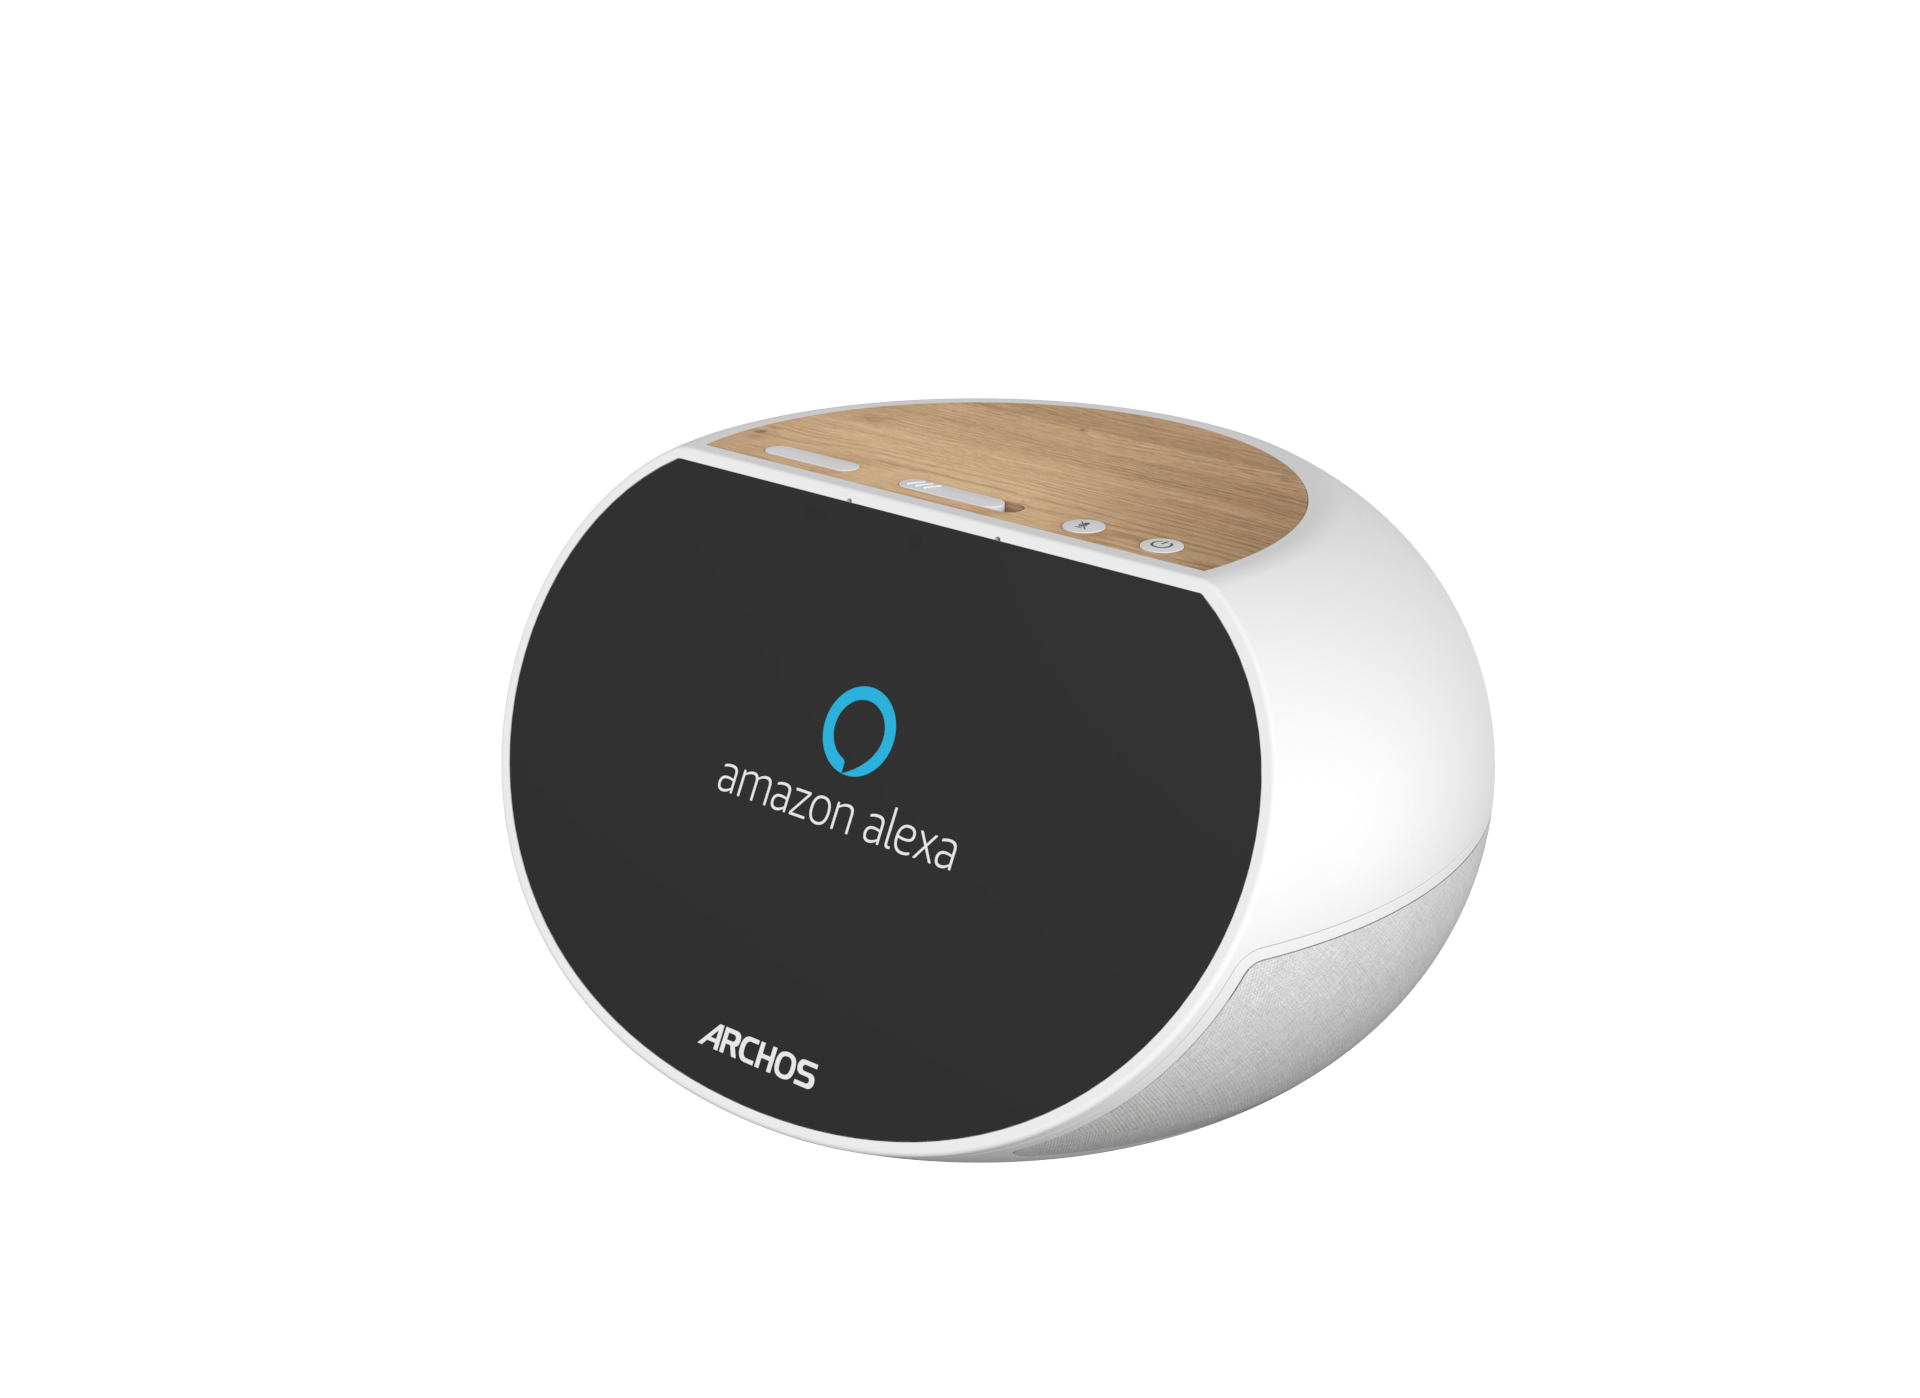 ARCHOS anunță dispozitivele Mate, cu AI și compatibile cu Alexa, serviciul de voce Amazon